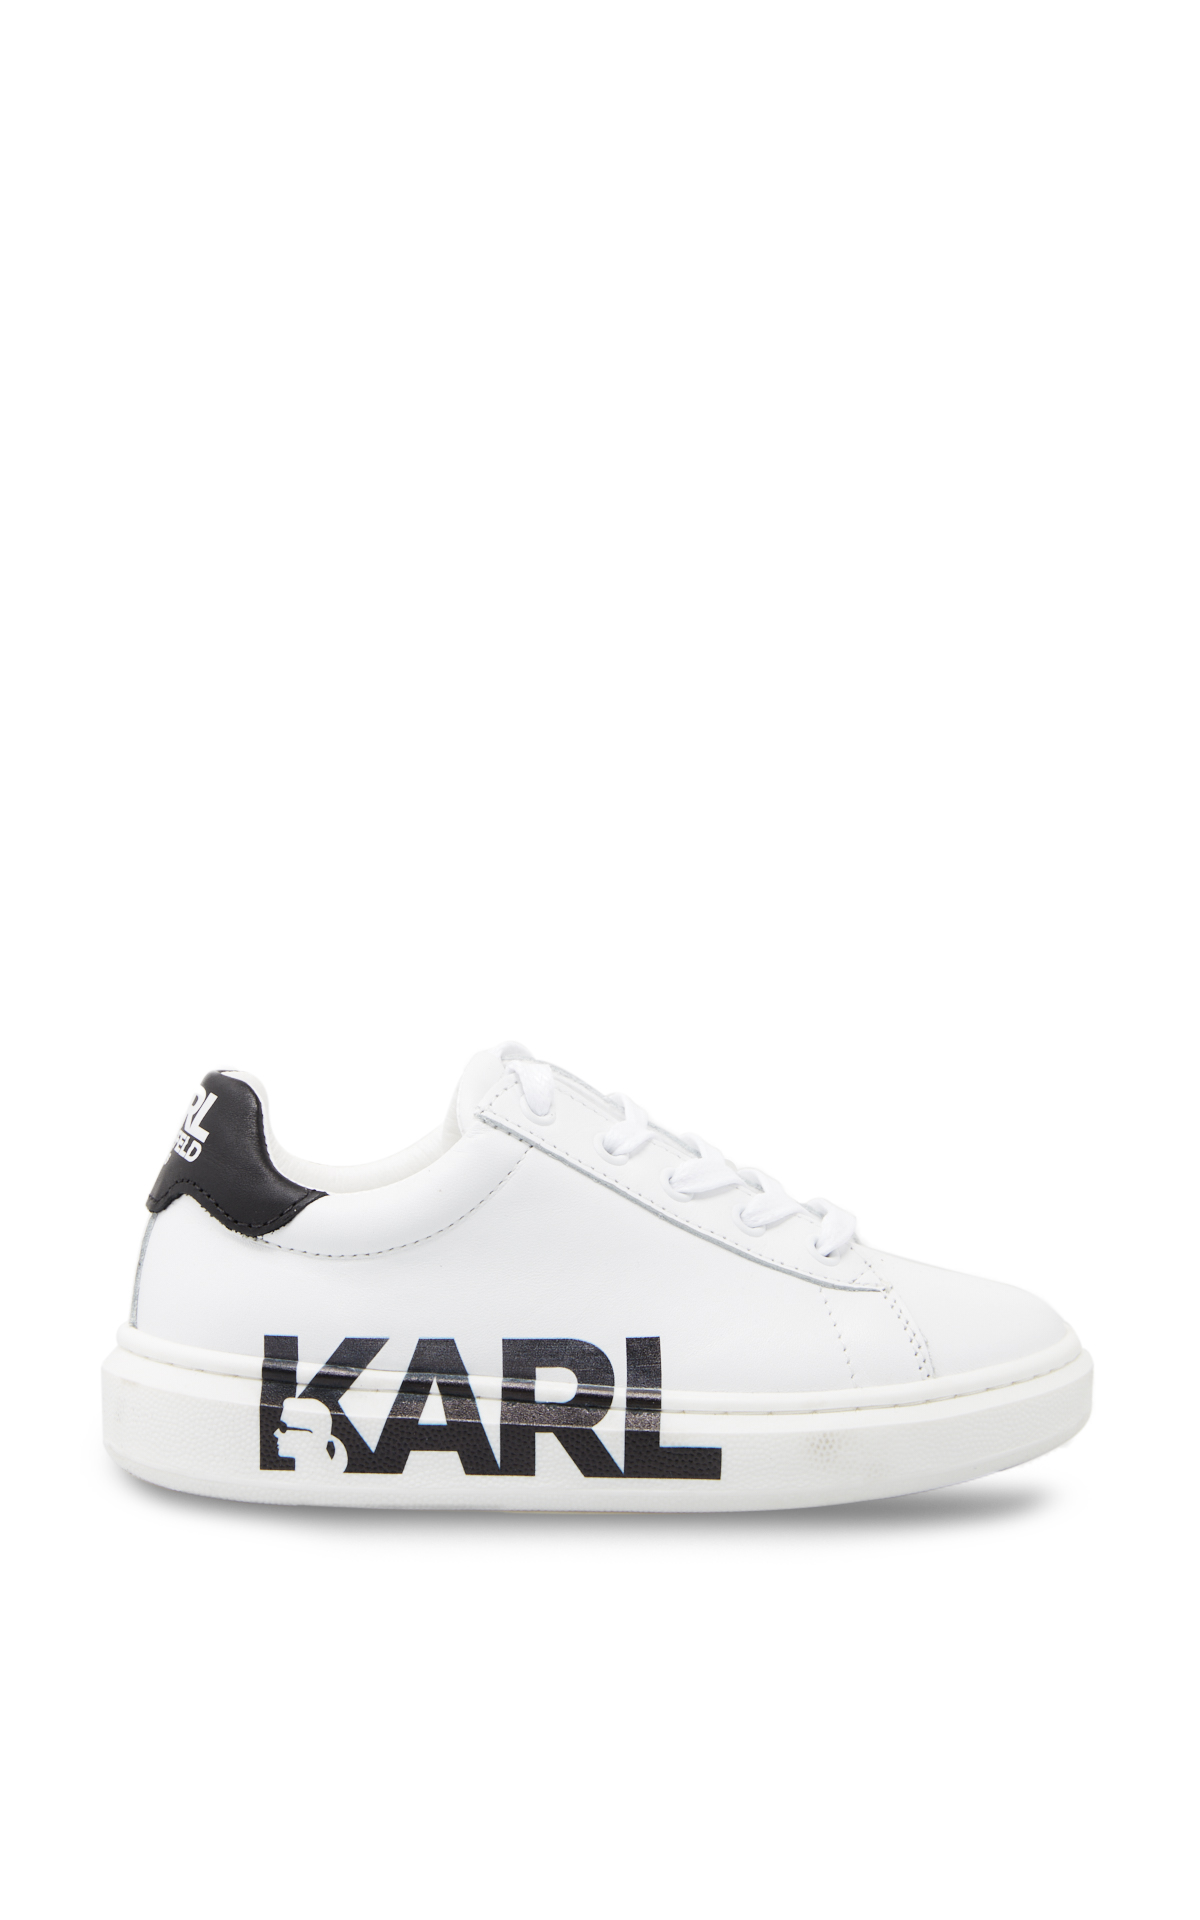 KARL LAGERFELD sneakers*